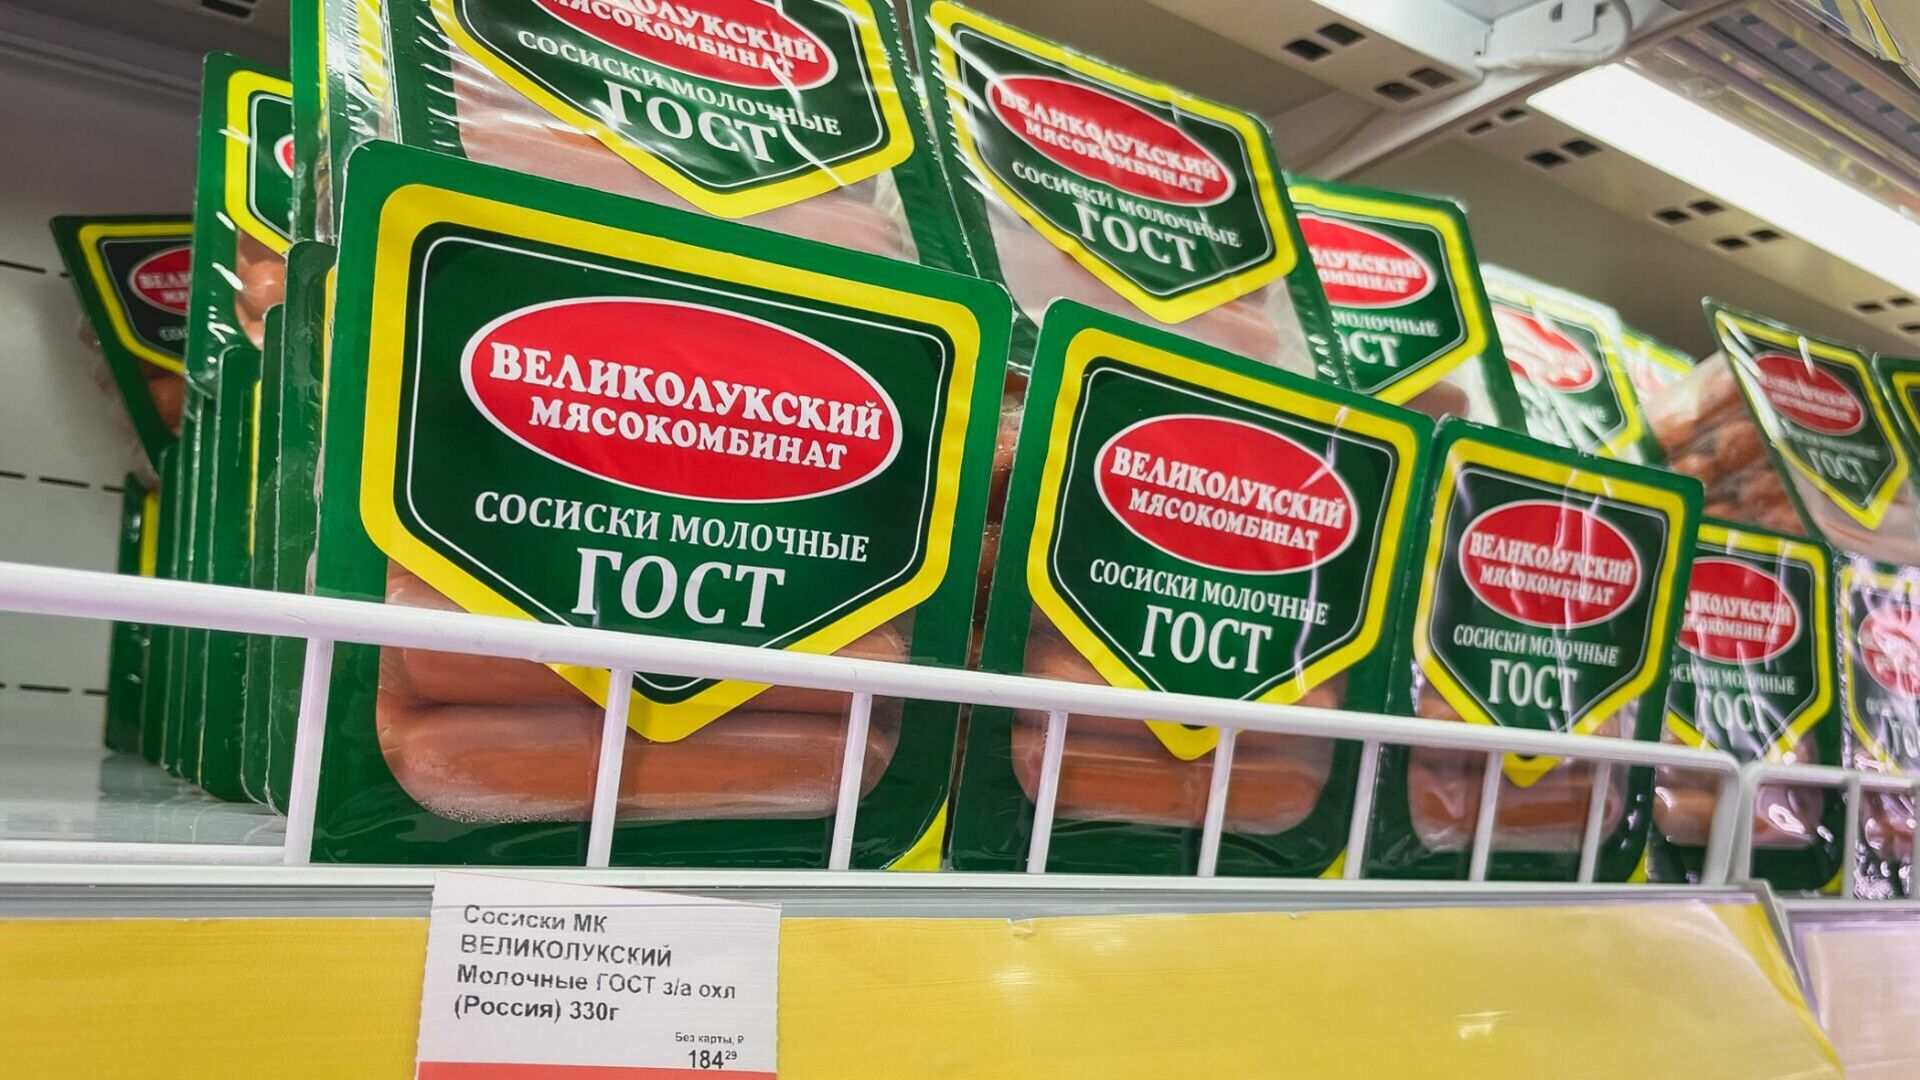 Роспотребнадзор обнаружил фальсификацию продуктов в Свердловской области